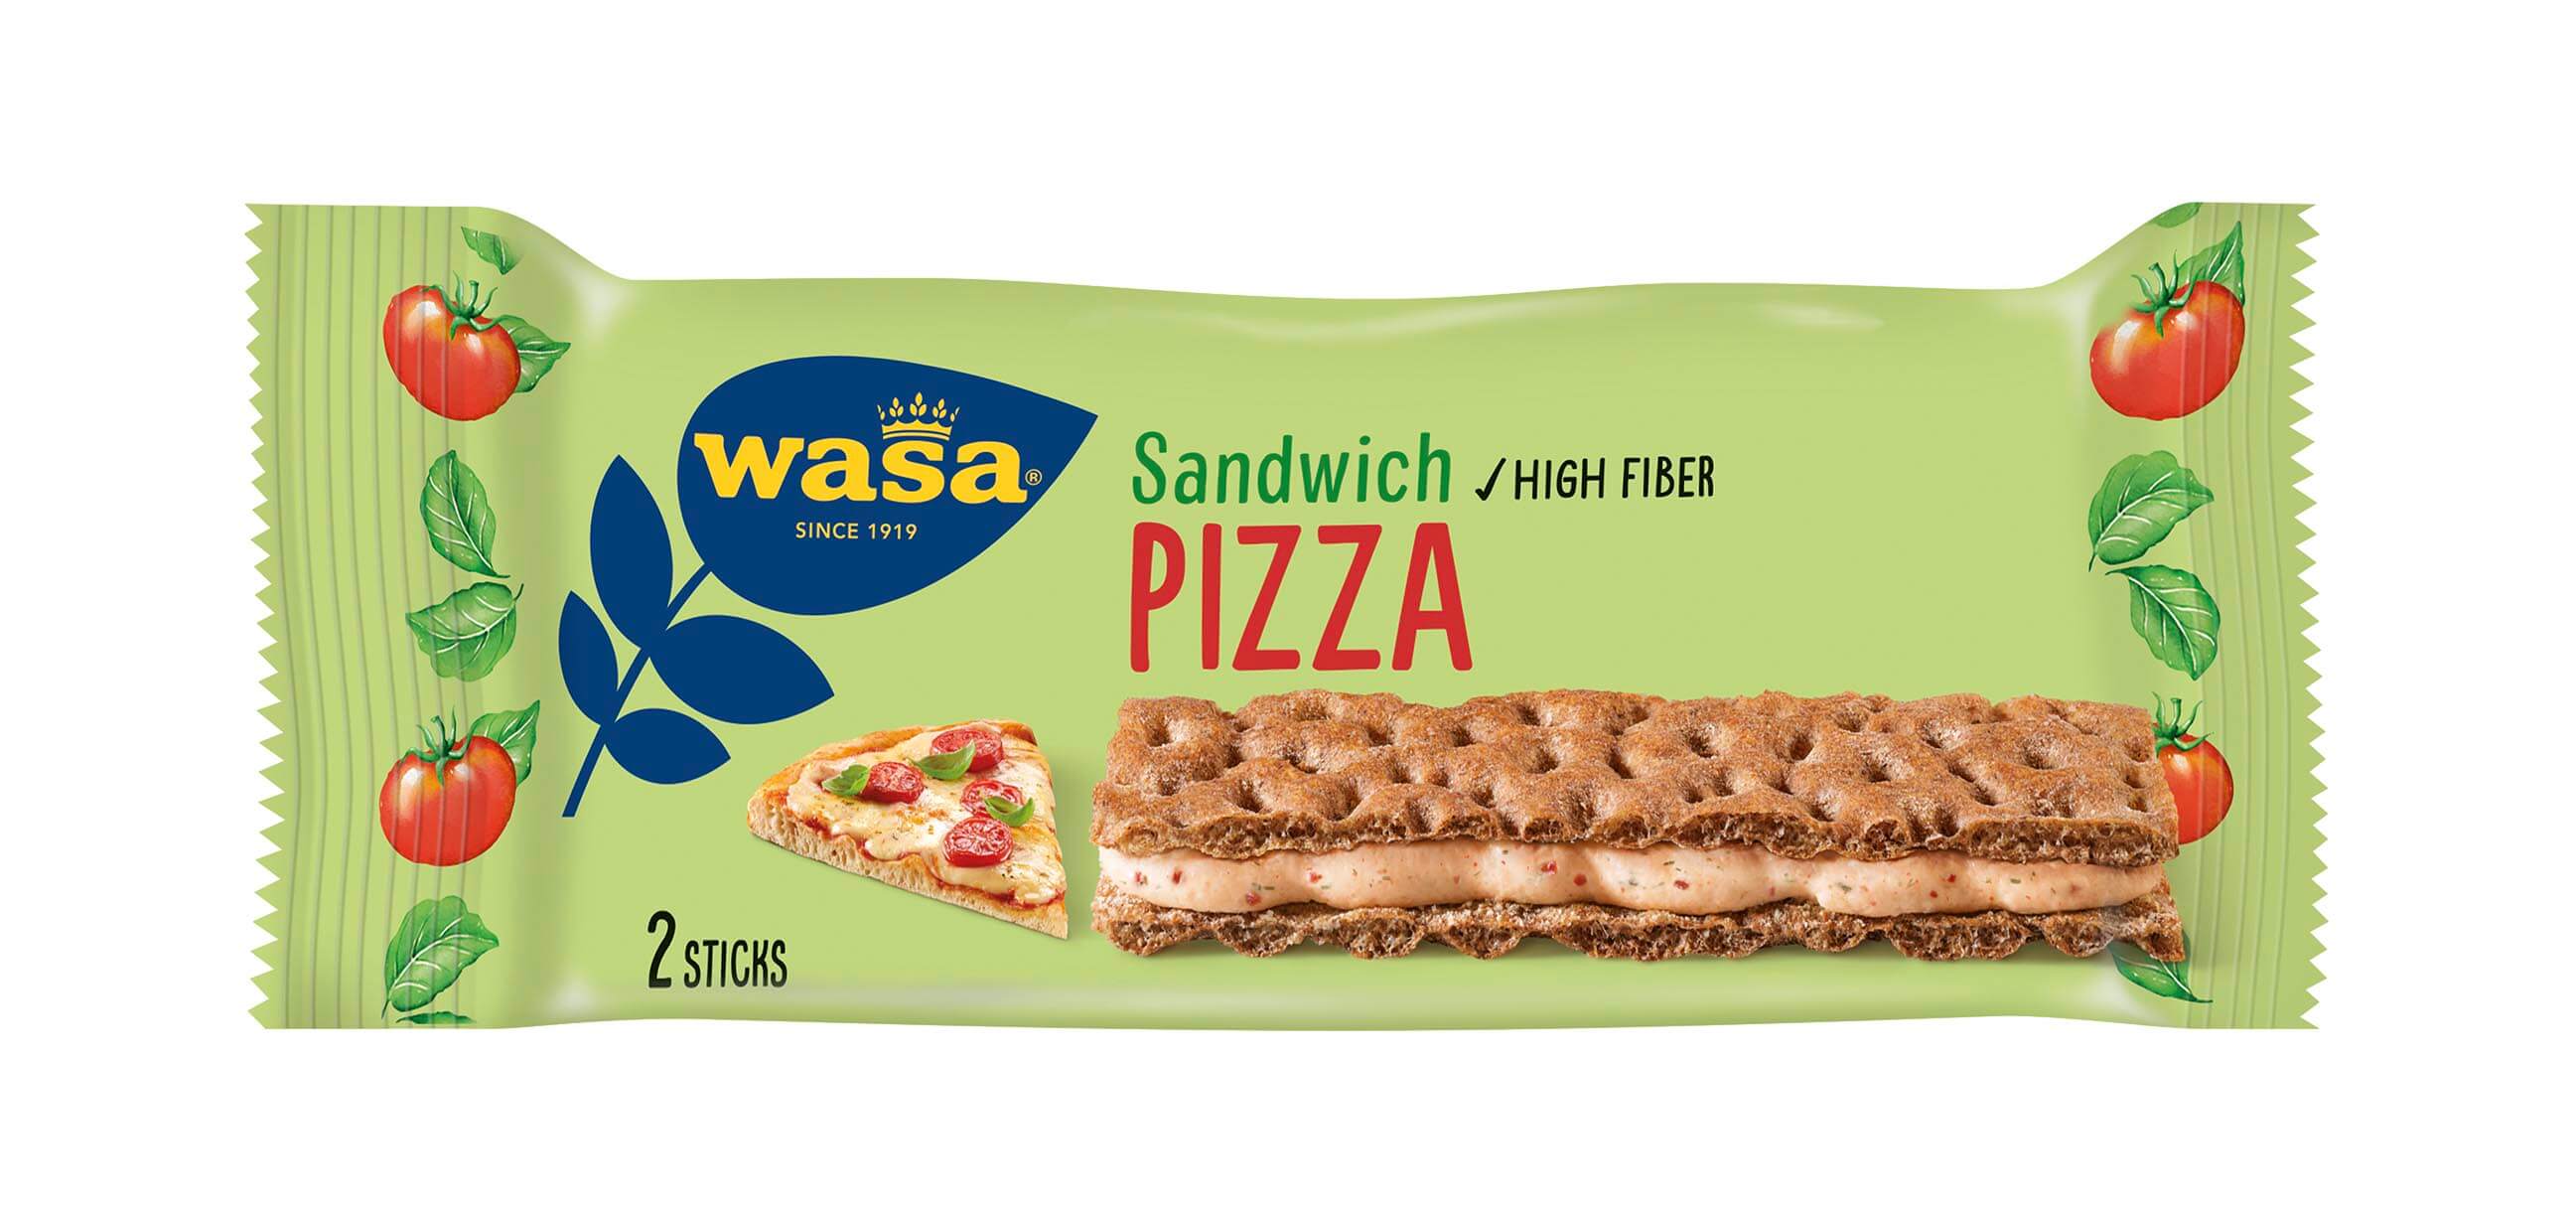 Wasa Sandwich Pizza - Upptäck ett veganskt mellanmål, gott knäckebröd med krämig fyllning. Utmärkt som mellanmål på språng och som tips på mellanmål till jobbet, efter skolan eller innan träning.